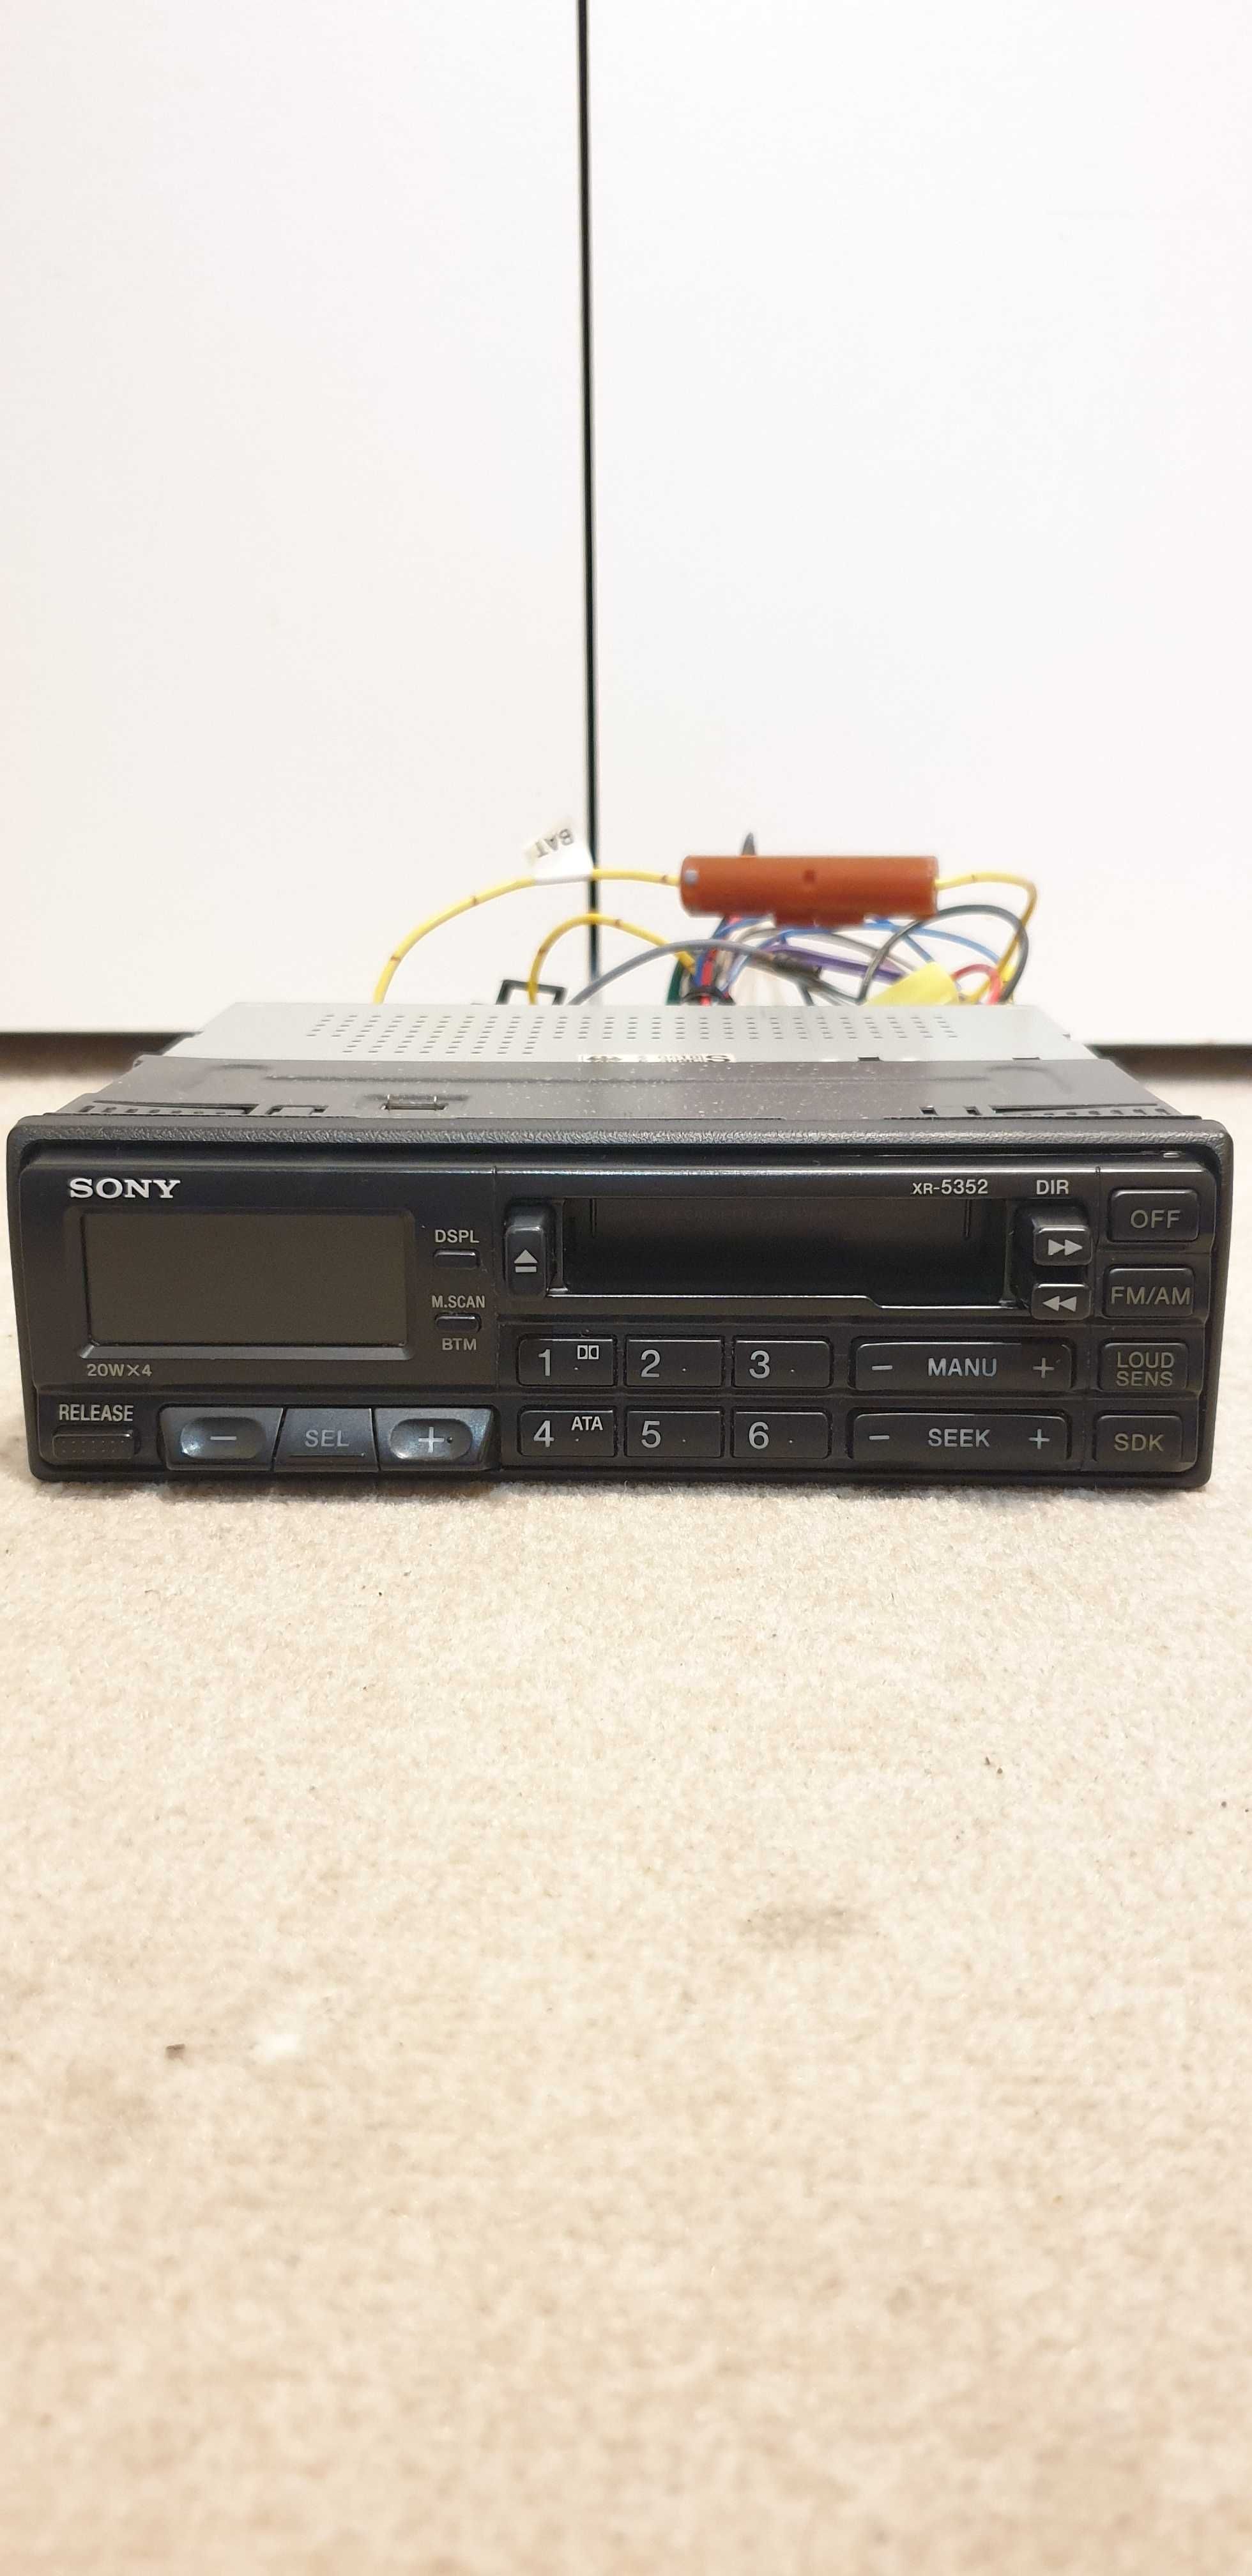 Sony XR-5352, Radio-magnetofon samochodowy. NOWY, 1992 Rok